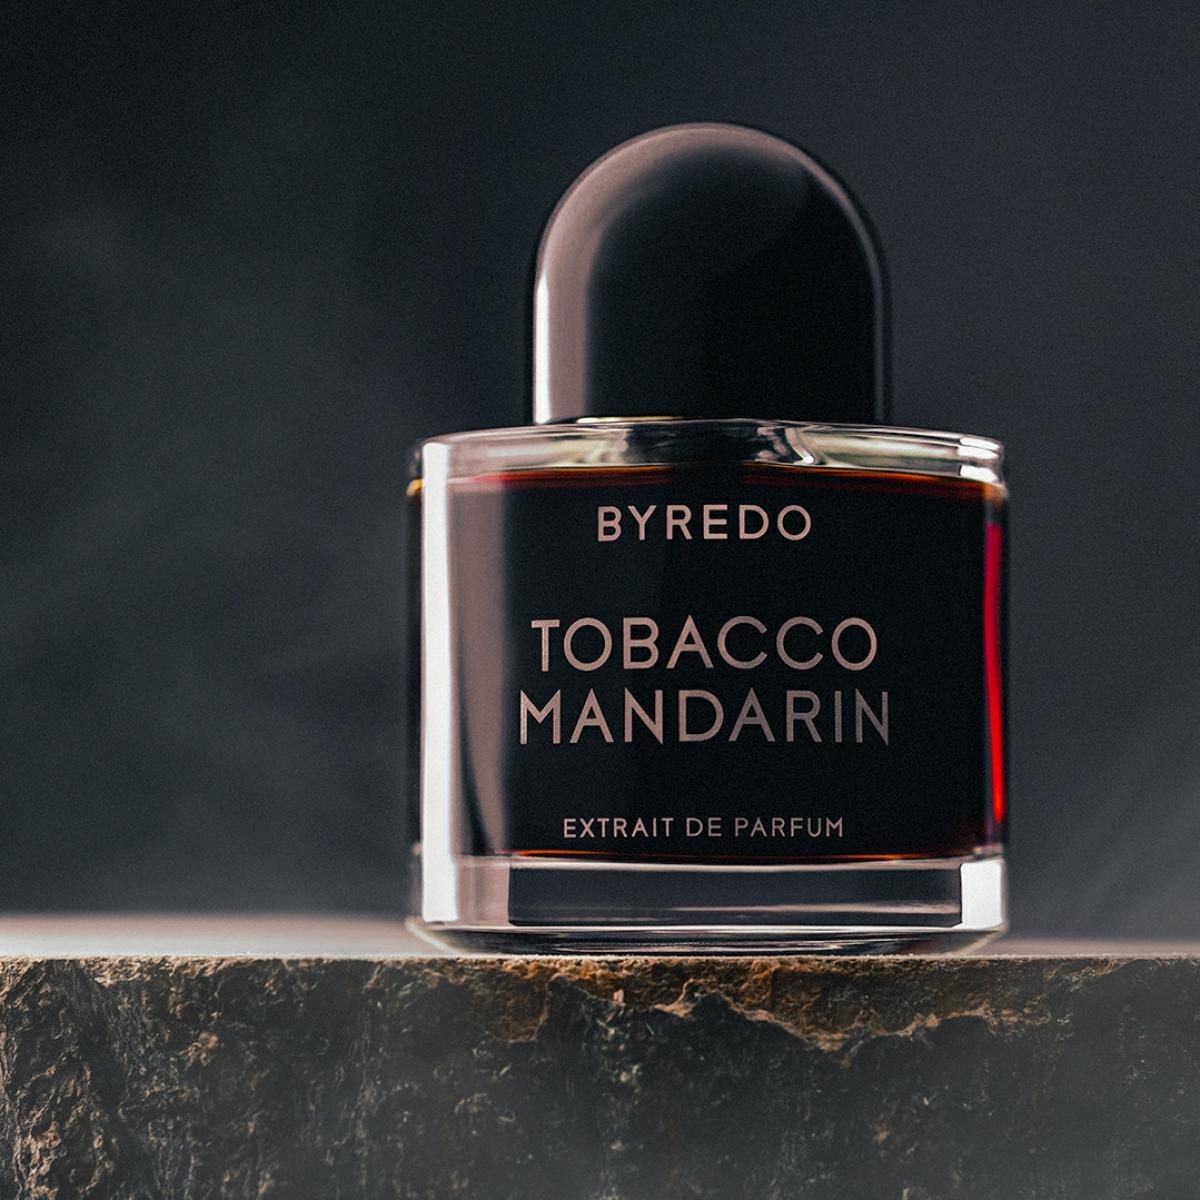 Tobacco Mandarin Byredo perfume - a novo fragrância Compartilhável 2020